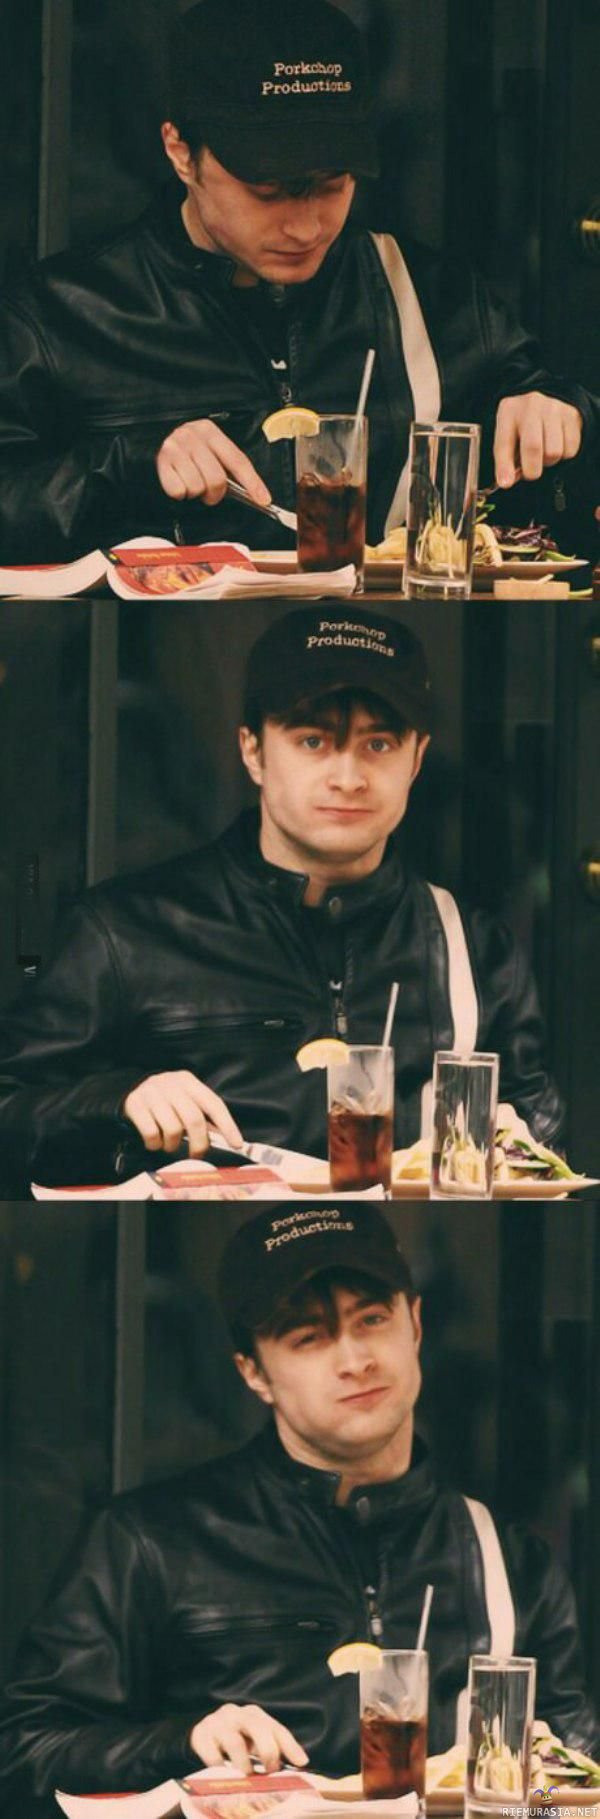 Daniel Radcliffe syömässä - Huomaa valokuvaajan ilmeestä päätellen